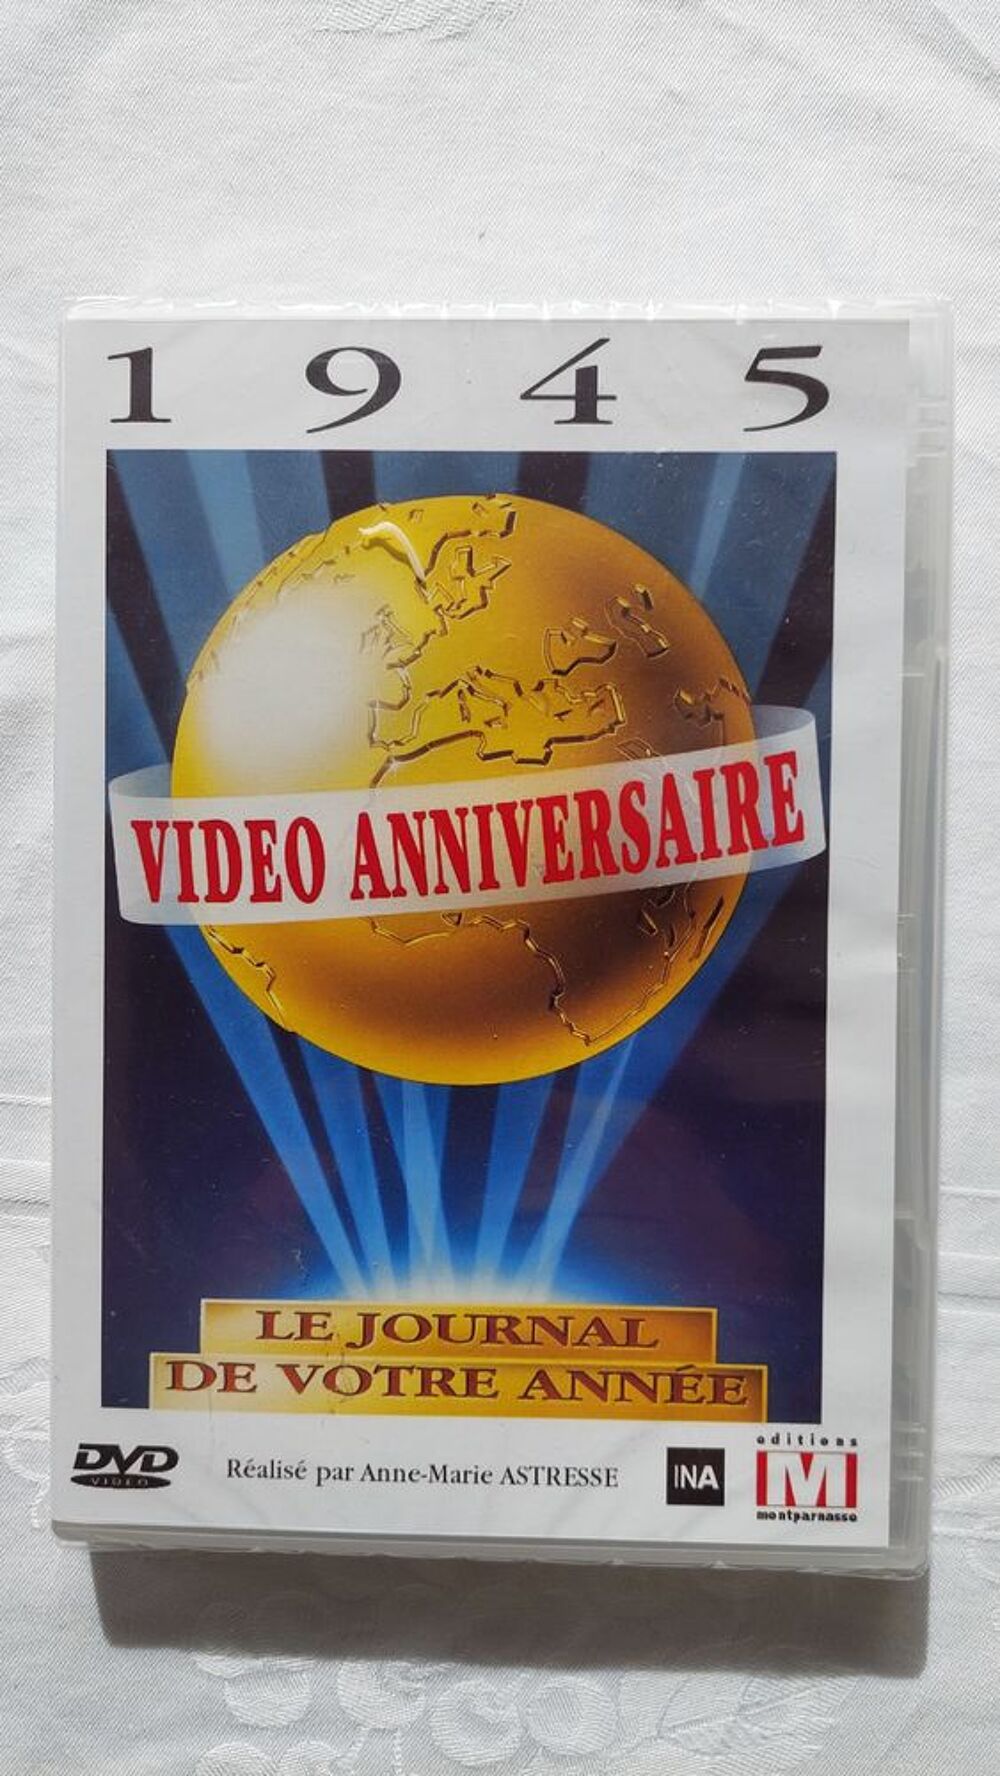 Vid&eacute;o anniversaire 1945 Le journal de votre anniversaire DVD et blu-ray